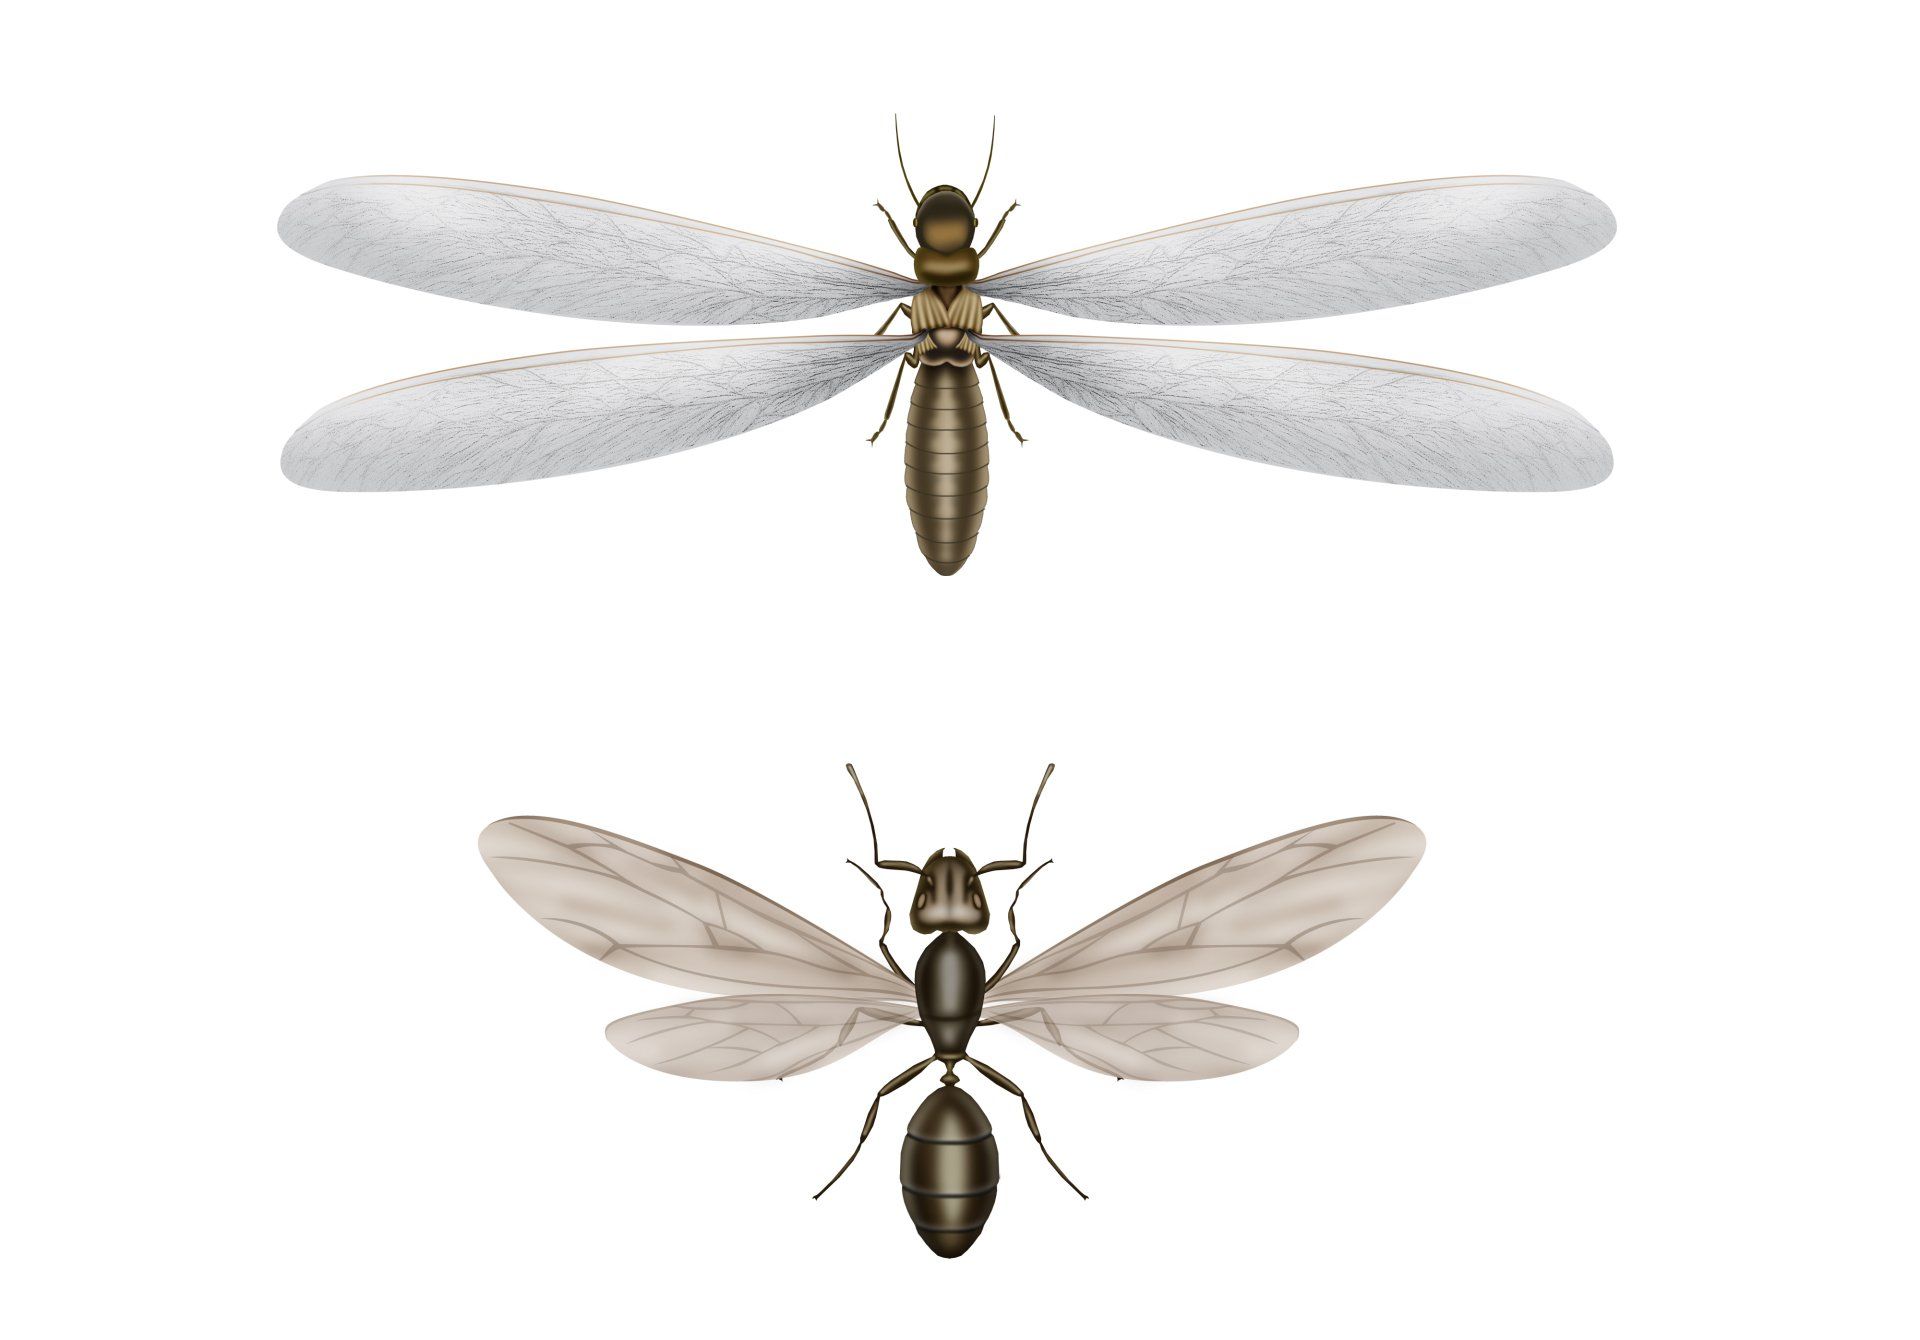 Ant swarmer vs termite swarmer